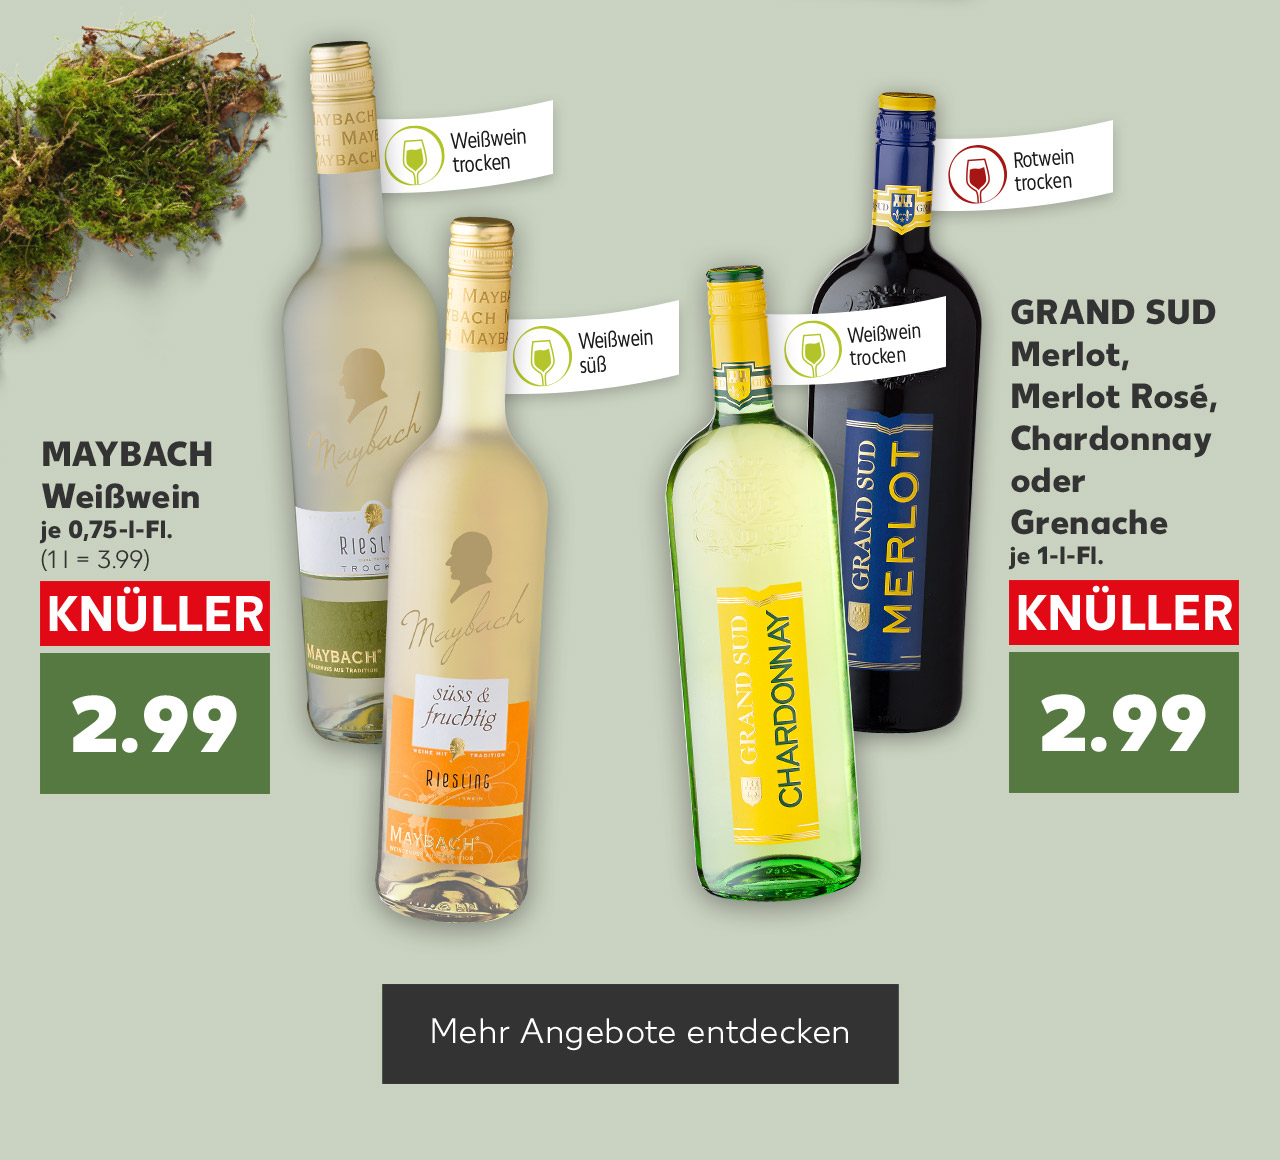 MAYBACH Weißwein, versch. Sorten, je 0,75-l-Fl. für 2.99 Euro (1 l = 3.99); Fähnchen an der jeweiligen Flasche: Weißwein trocken; Weißwein süß; GRAND SUD Merlot, Merlot Rosé, Chardonnay oder Grenache, je 1-l-Fl. für 2.99 Euro; Fähnchen an der jeweiligen Flasche: Weißwein trocken; Rotwein trocken; Button: Mehr Angebote entdecken